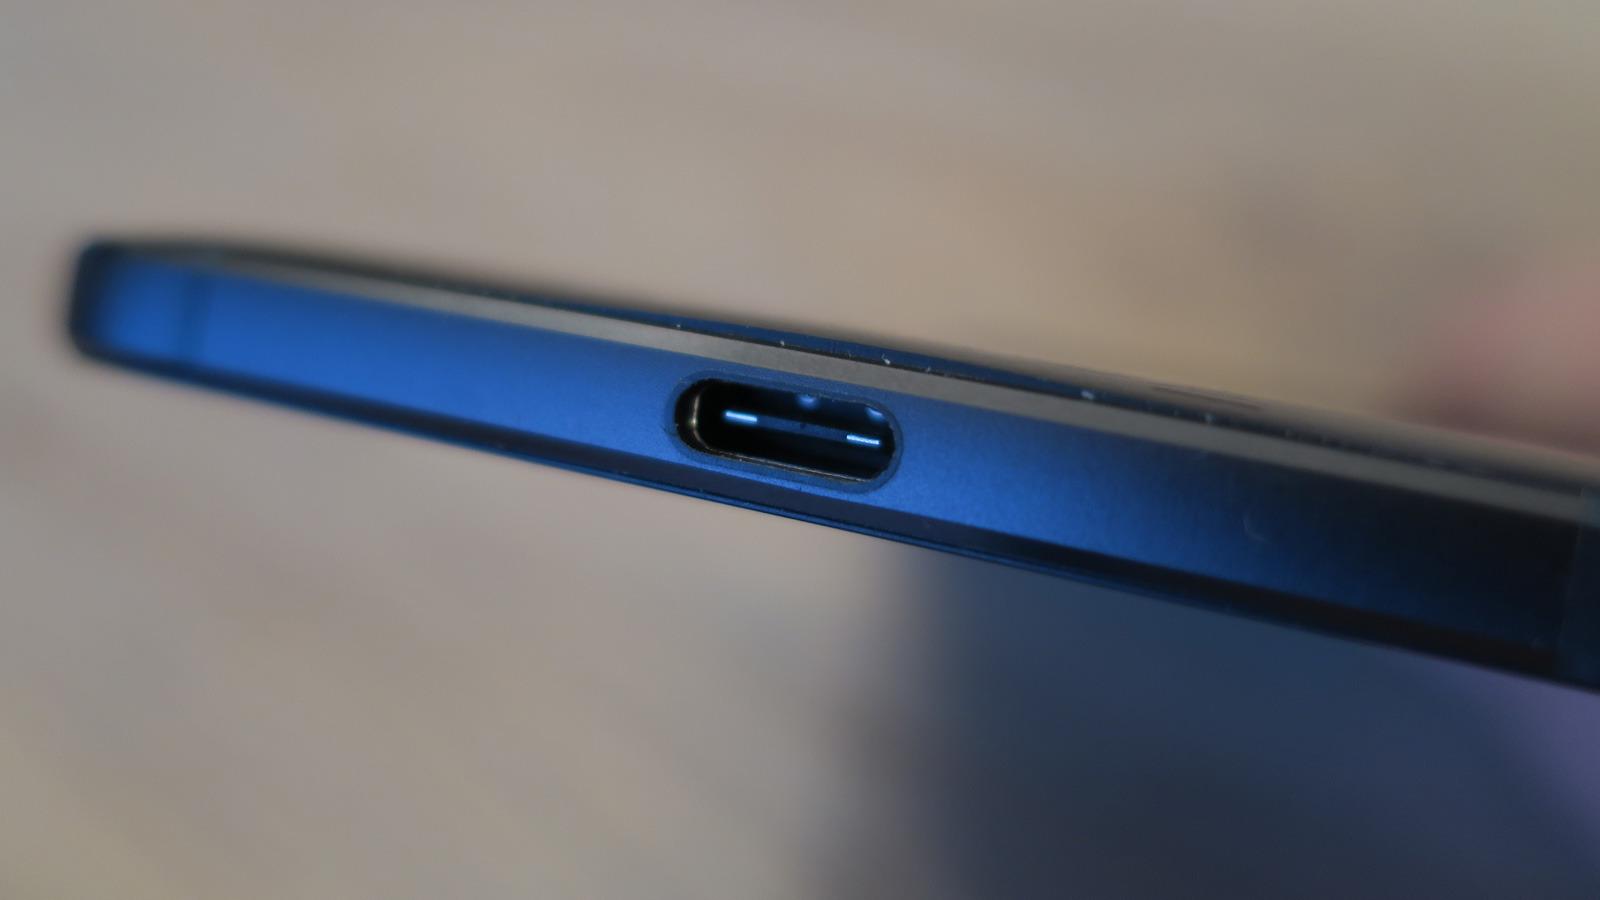 USB Type-C har enn så lenge både fordeler og ulemper. Huawei har i motsetning til LG valgt å legge ved en overgang fra vanlig USB til Type-C. Foto: Espen Irwing Swang, Tek.no